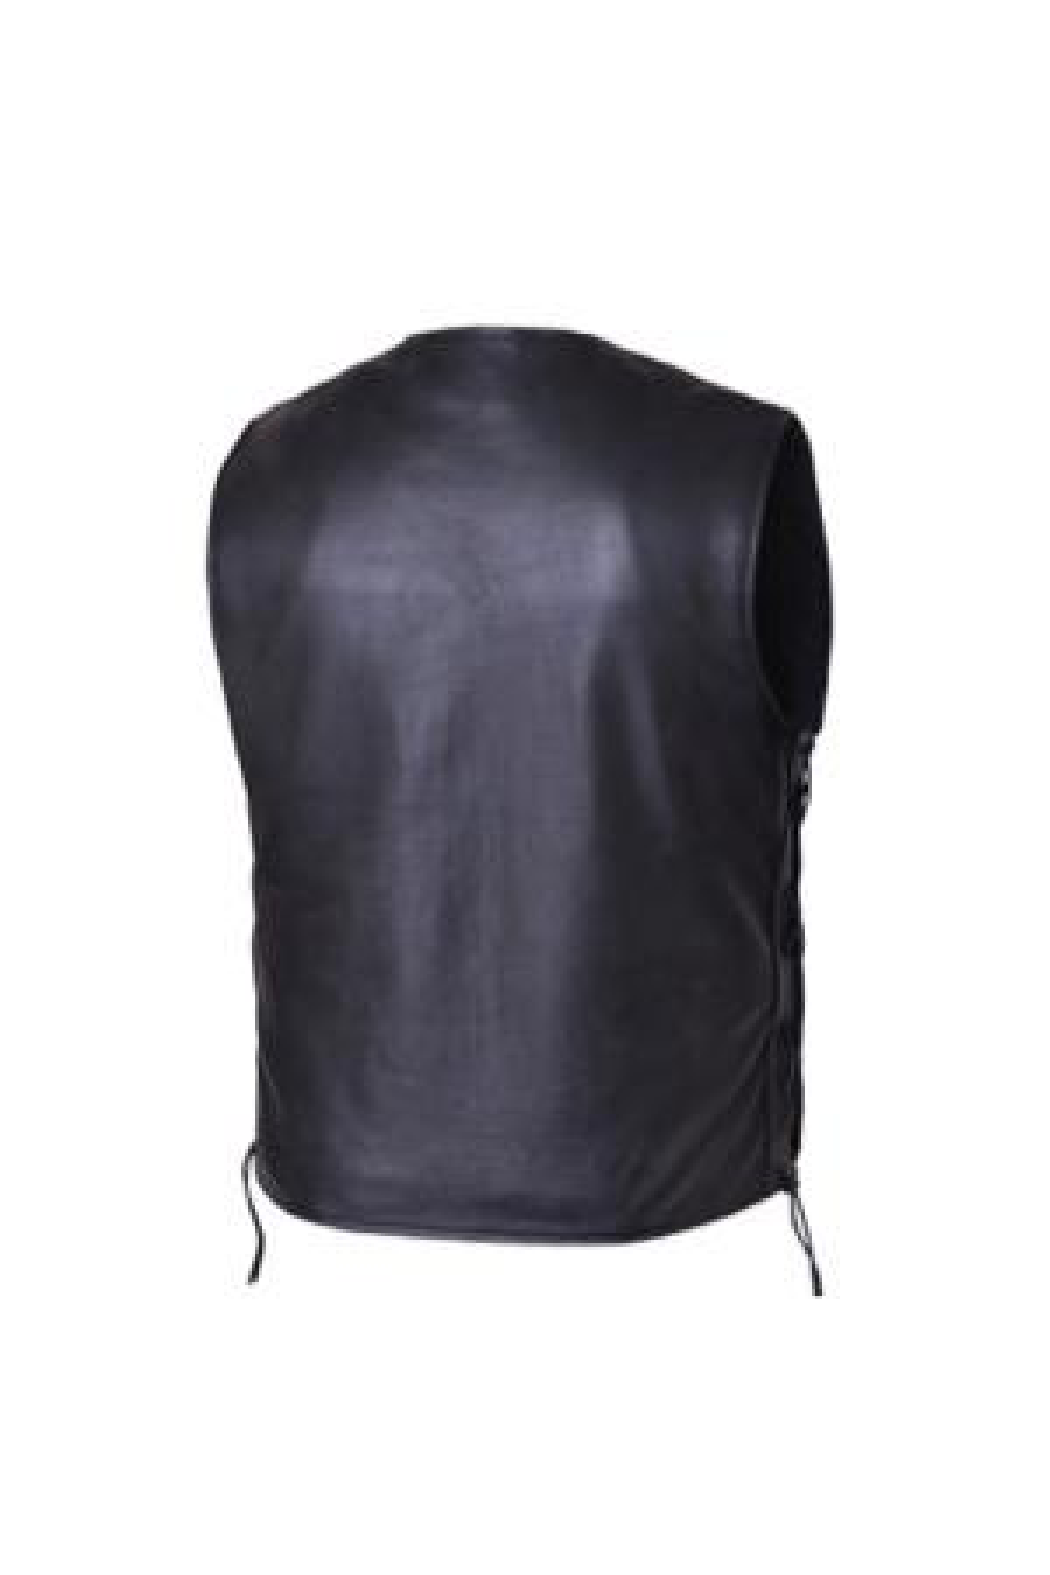 Unik Premium Leather Vest